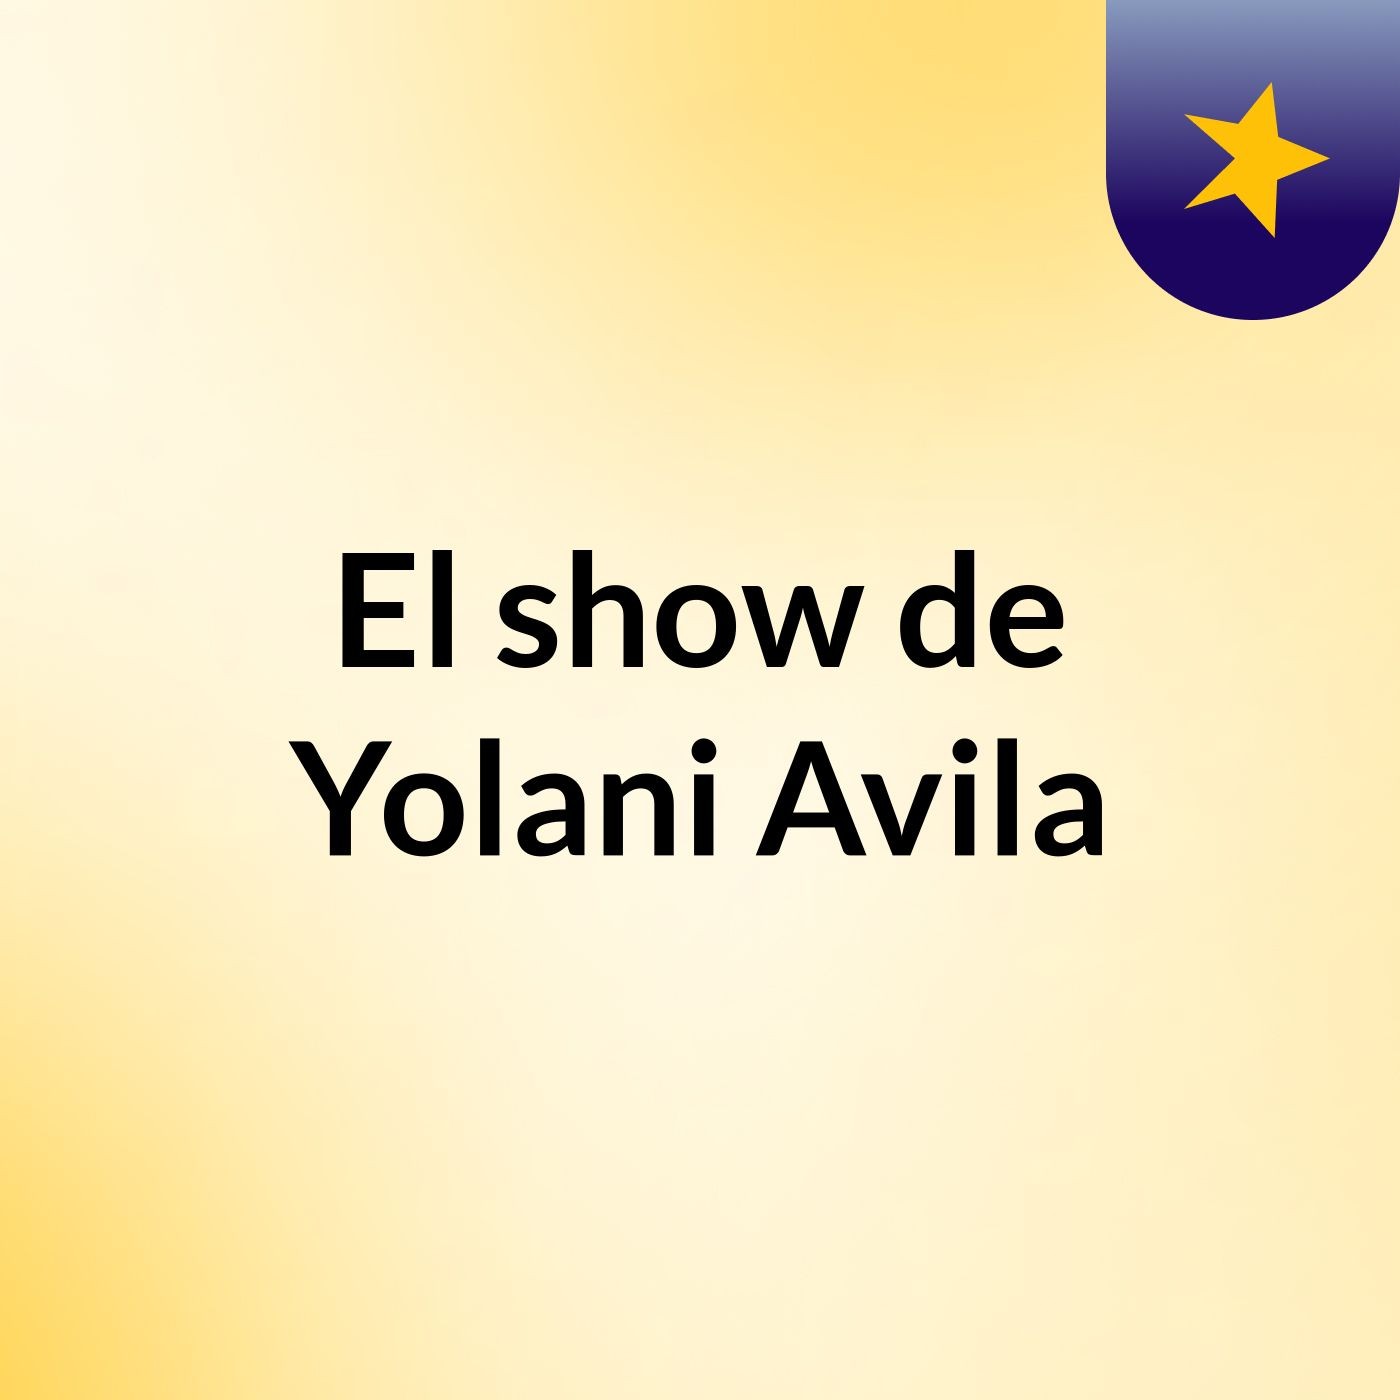 El show de Yolani Avila